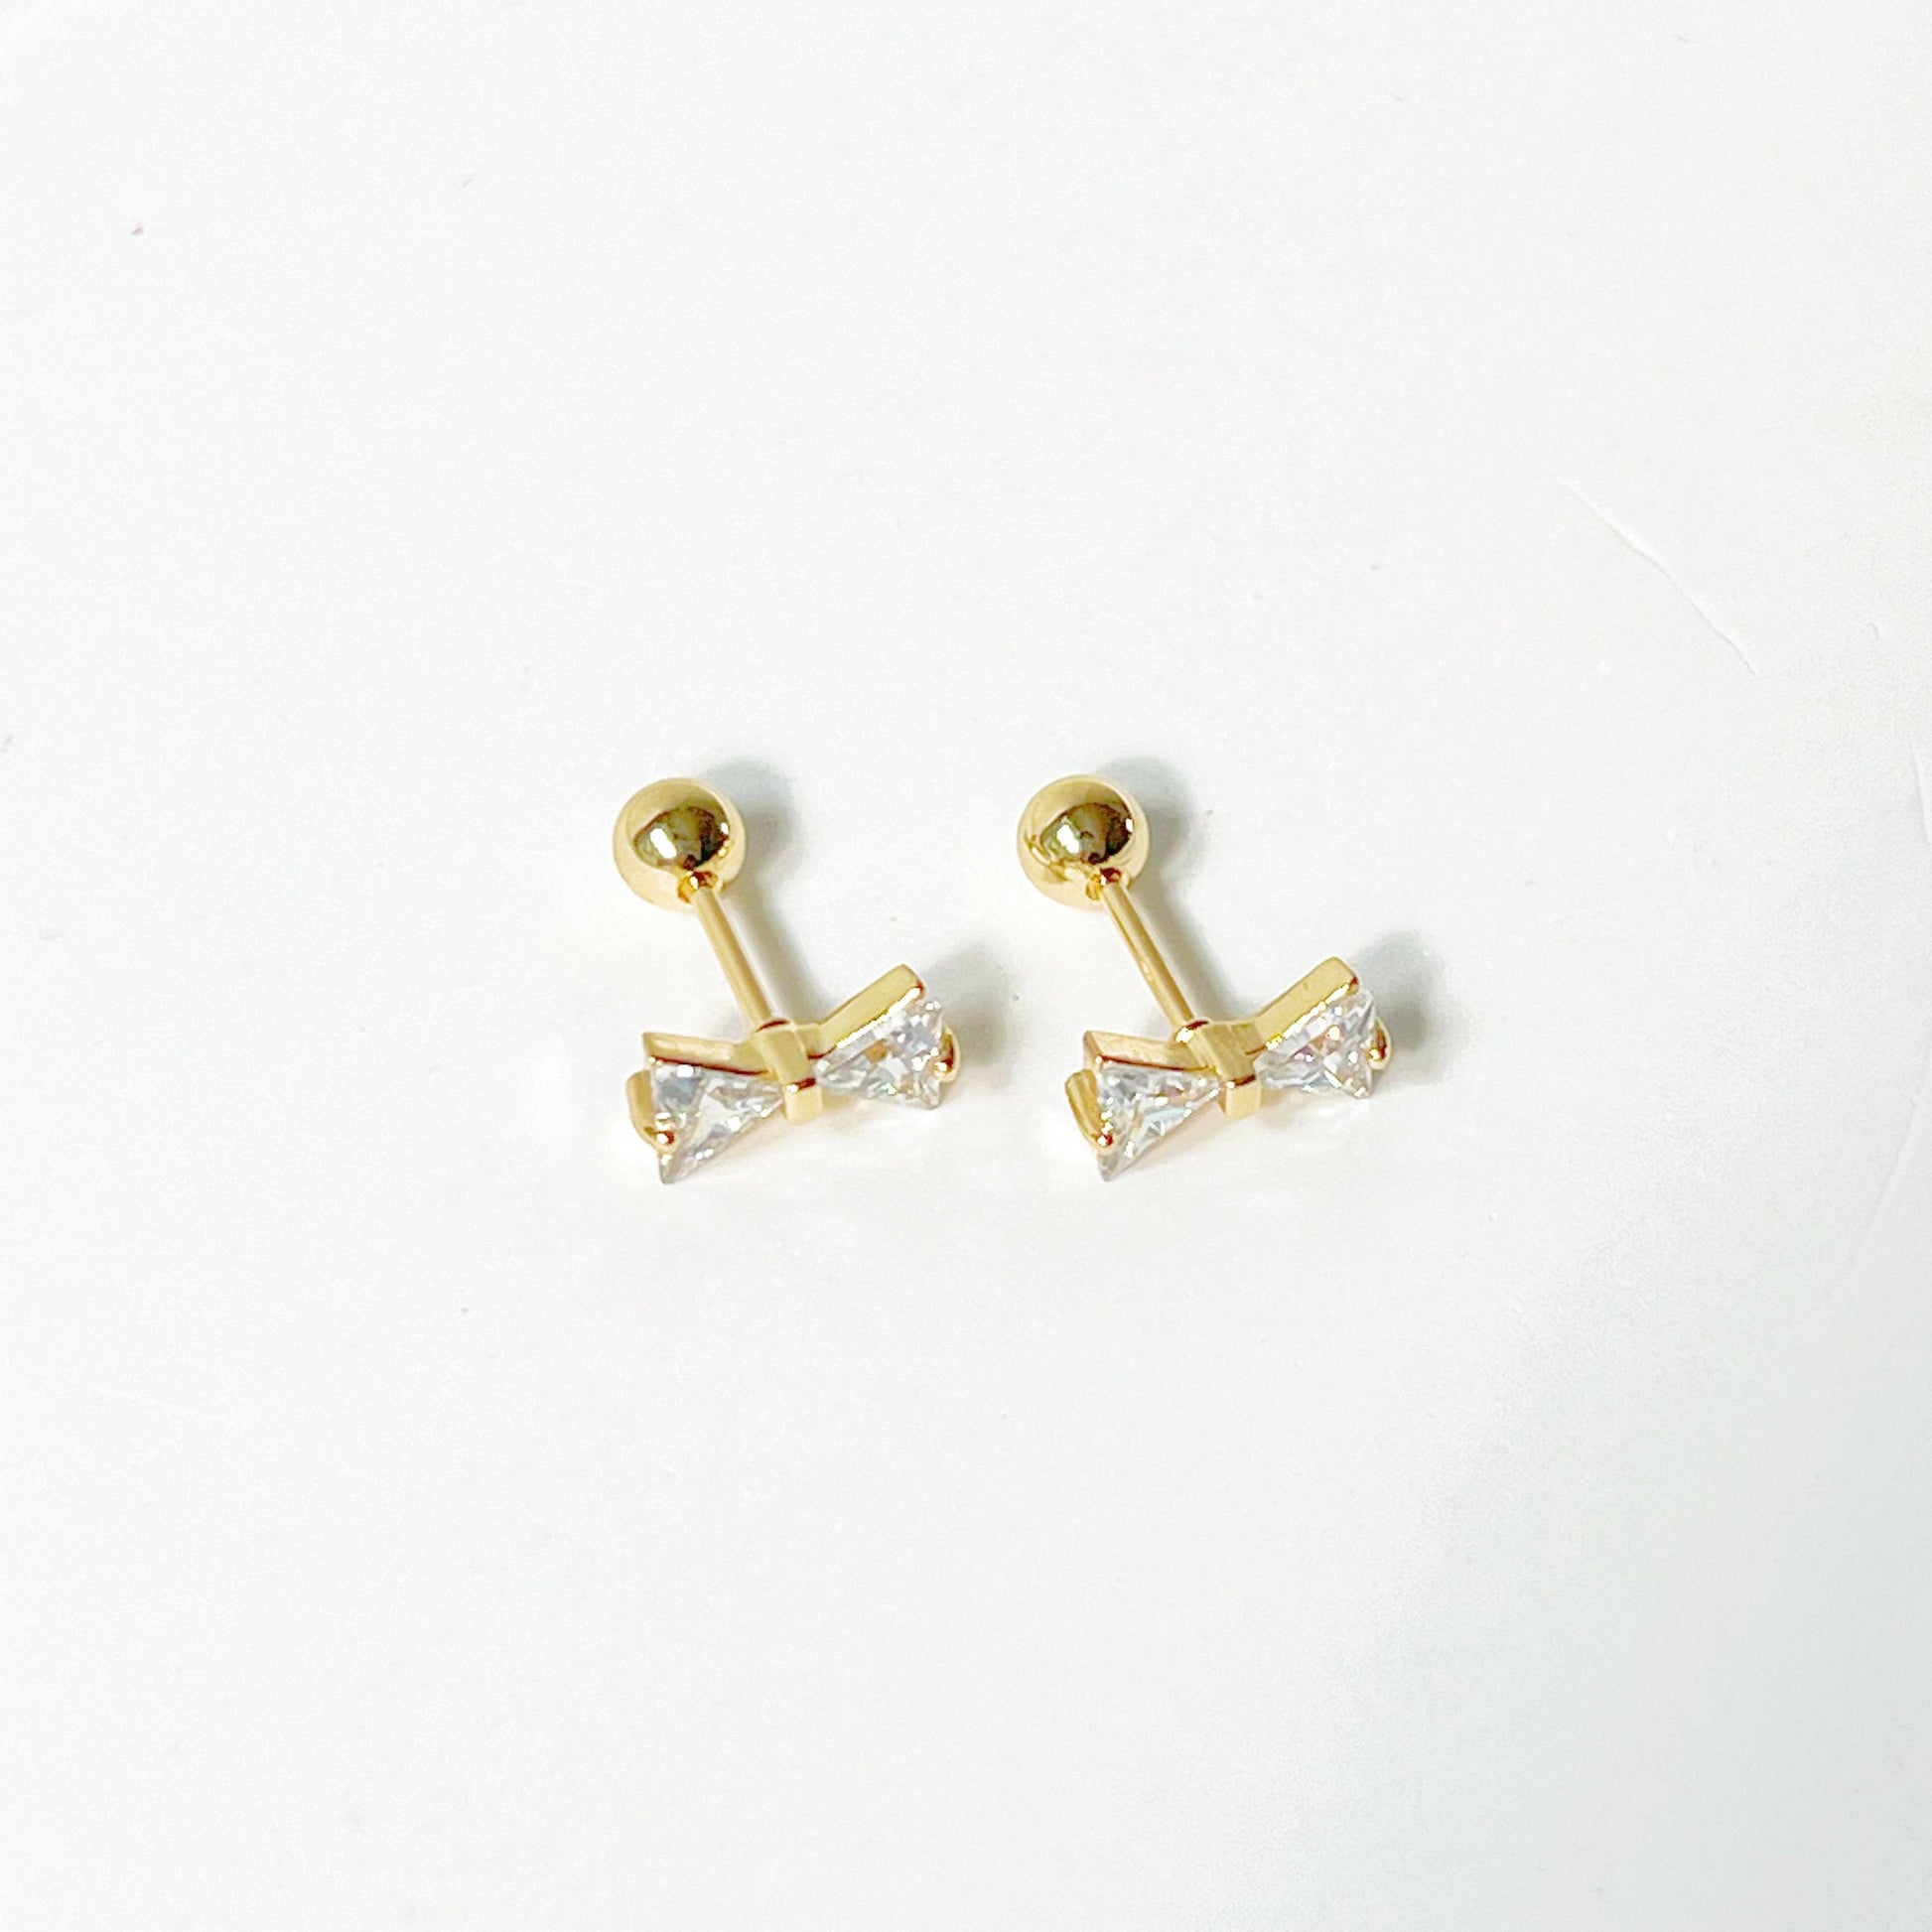 Gold Bow Zircon Earrings - Small Size Screw Back Earrings-Ninaouity